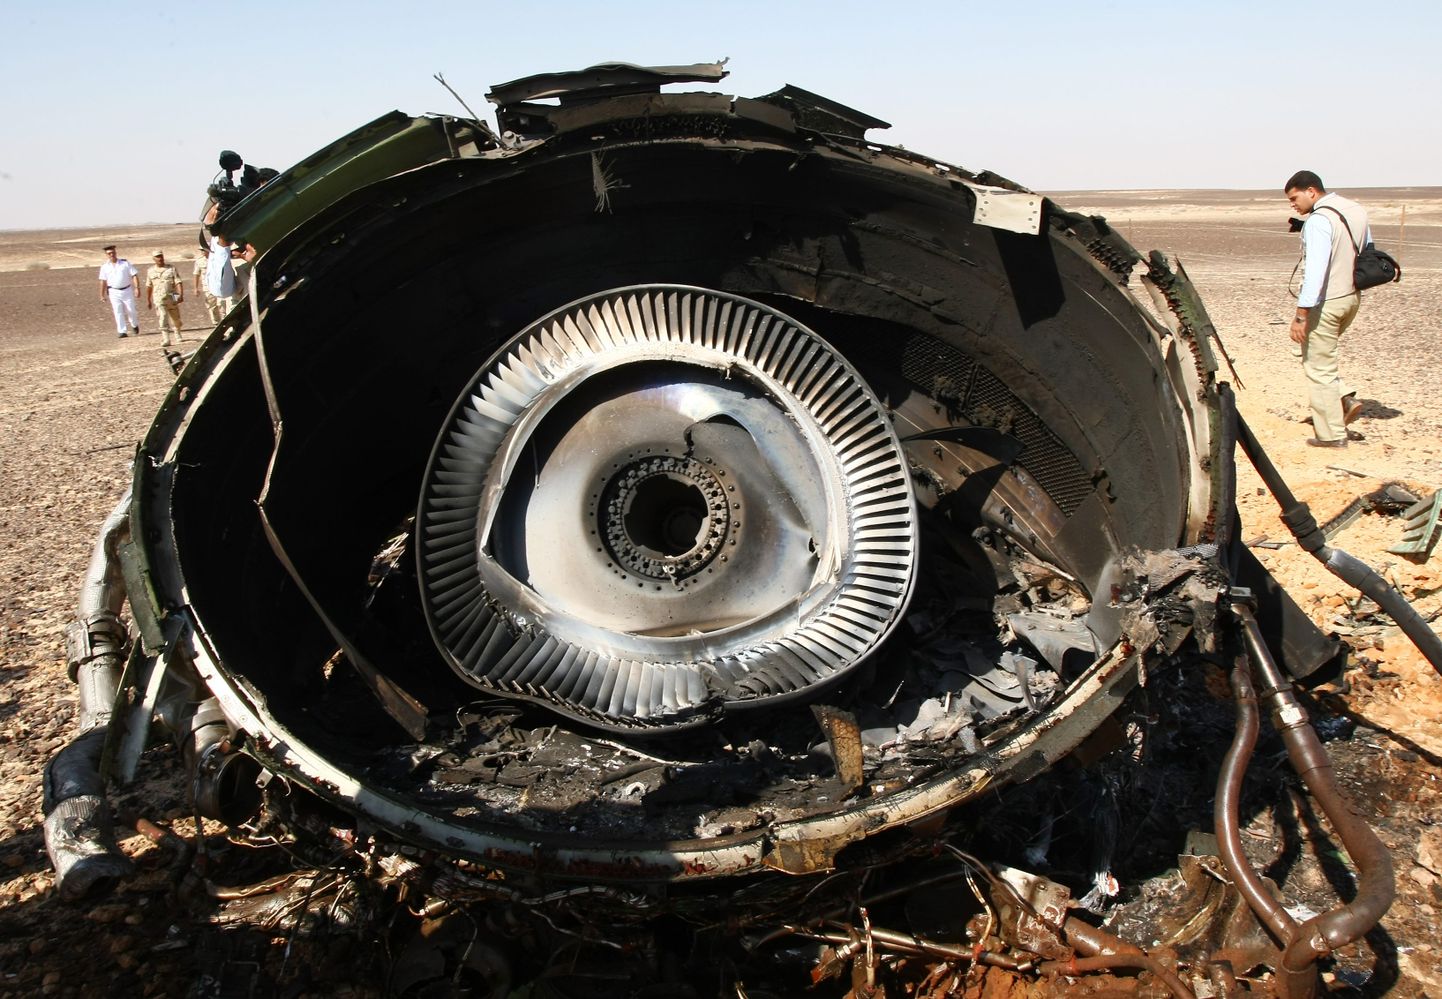 Двигатель самолета, разбившегося в Египте в 2015 году.